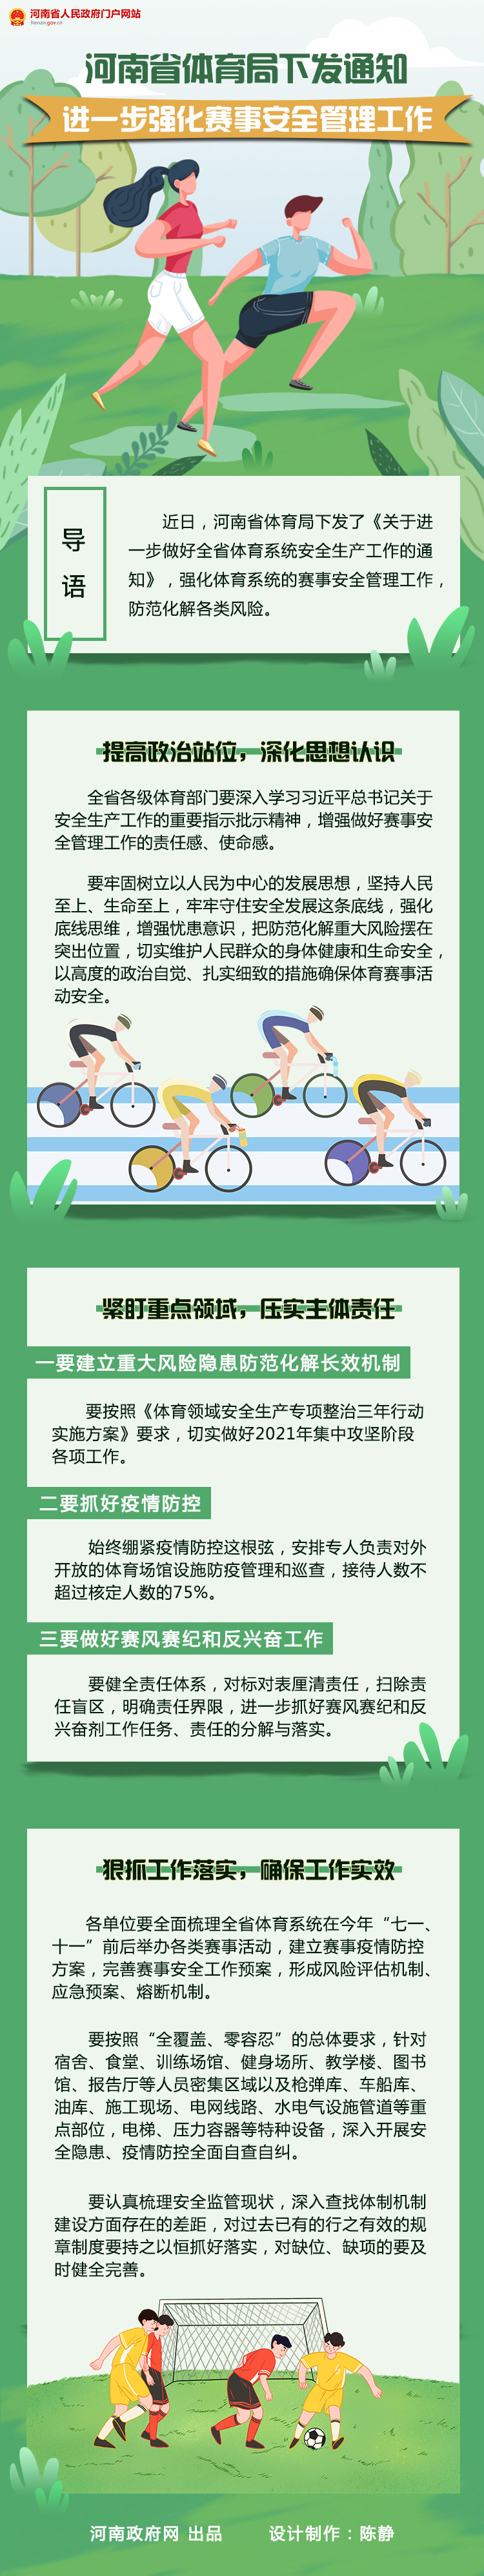 图解：河南省体育局下发通知 进一步强化赛事安全管理工作